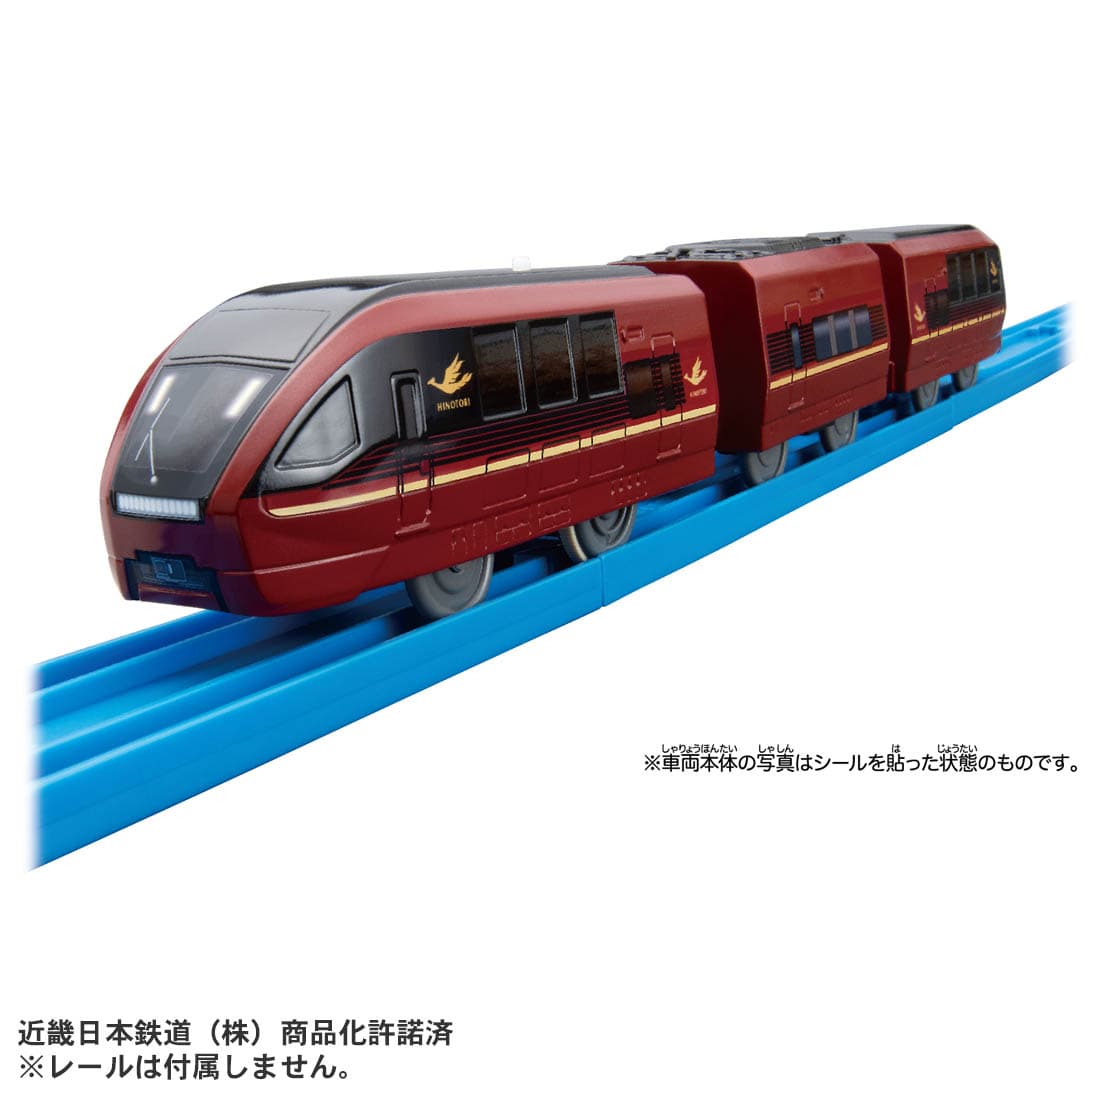 タカラトミー 901921 S-39 315系中央本線 鉄道模型 通販 ホビーショップタムタム